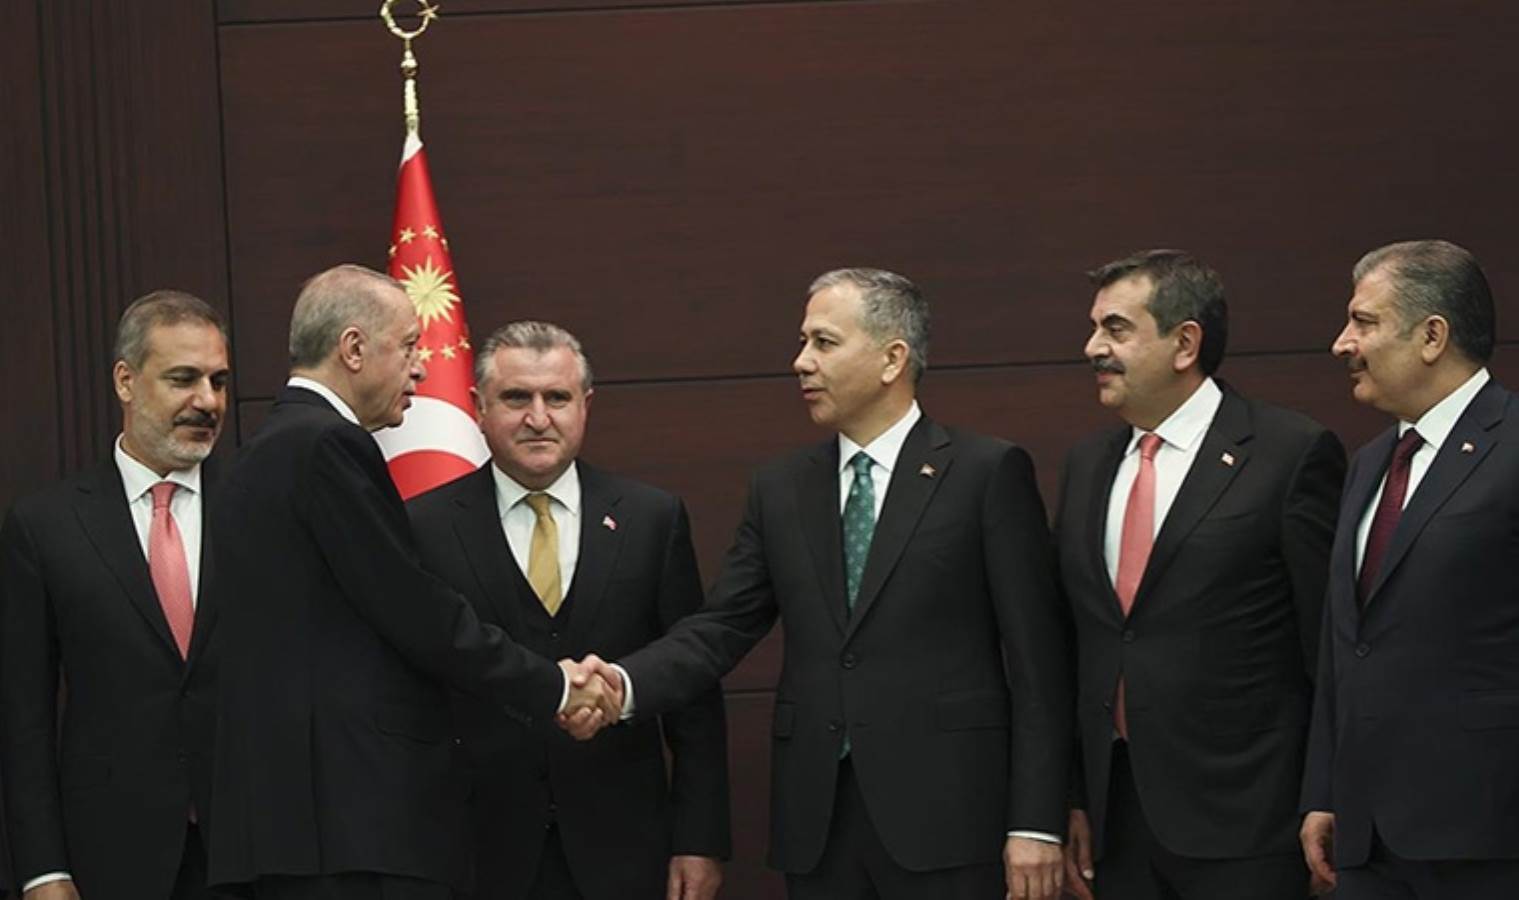 AKP’nin üç büyük ildeki adaylarıyla ilgili çarpıcı iddia: İstanbul’a Yerlikaya, Ankara'ya Altınok; İzmir’e ise ‘Soyer’ ayarı!